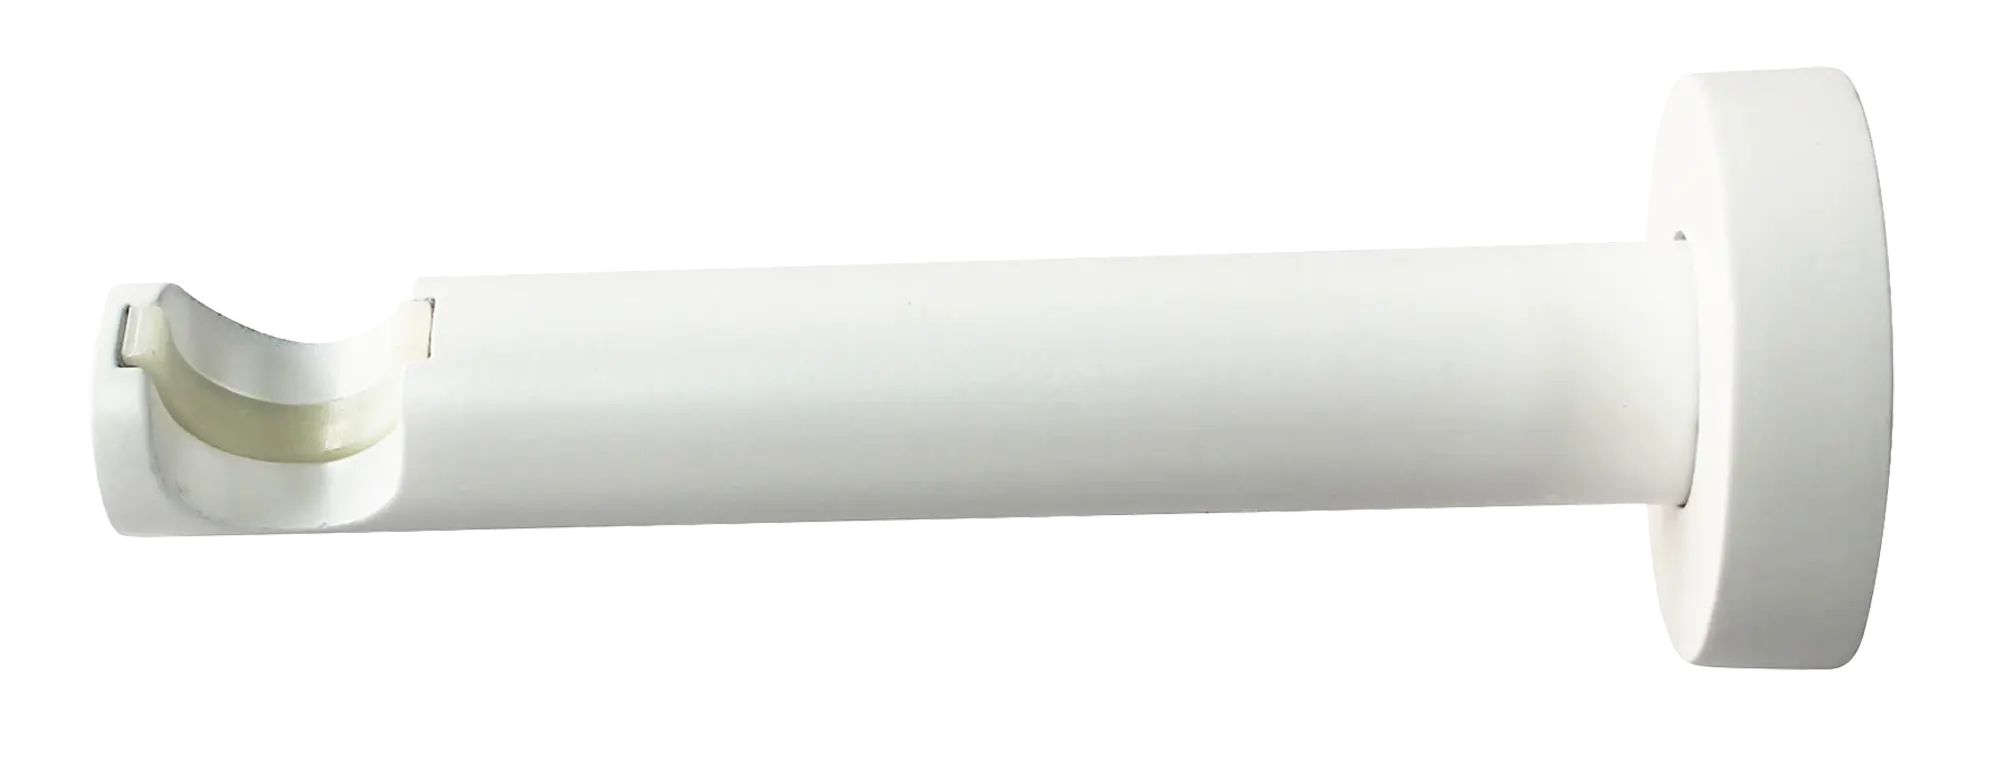 обливное устройство с пластиковой вставкой 10 л Держатель однорядный с пластиковой вставкой Inspire, металл, цвет белый, 2 см